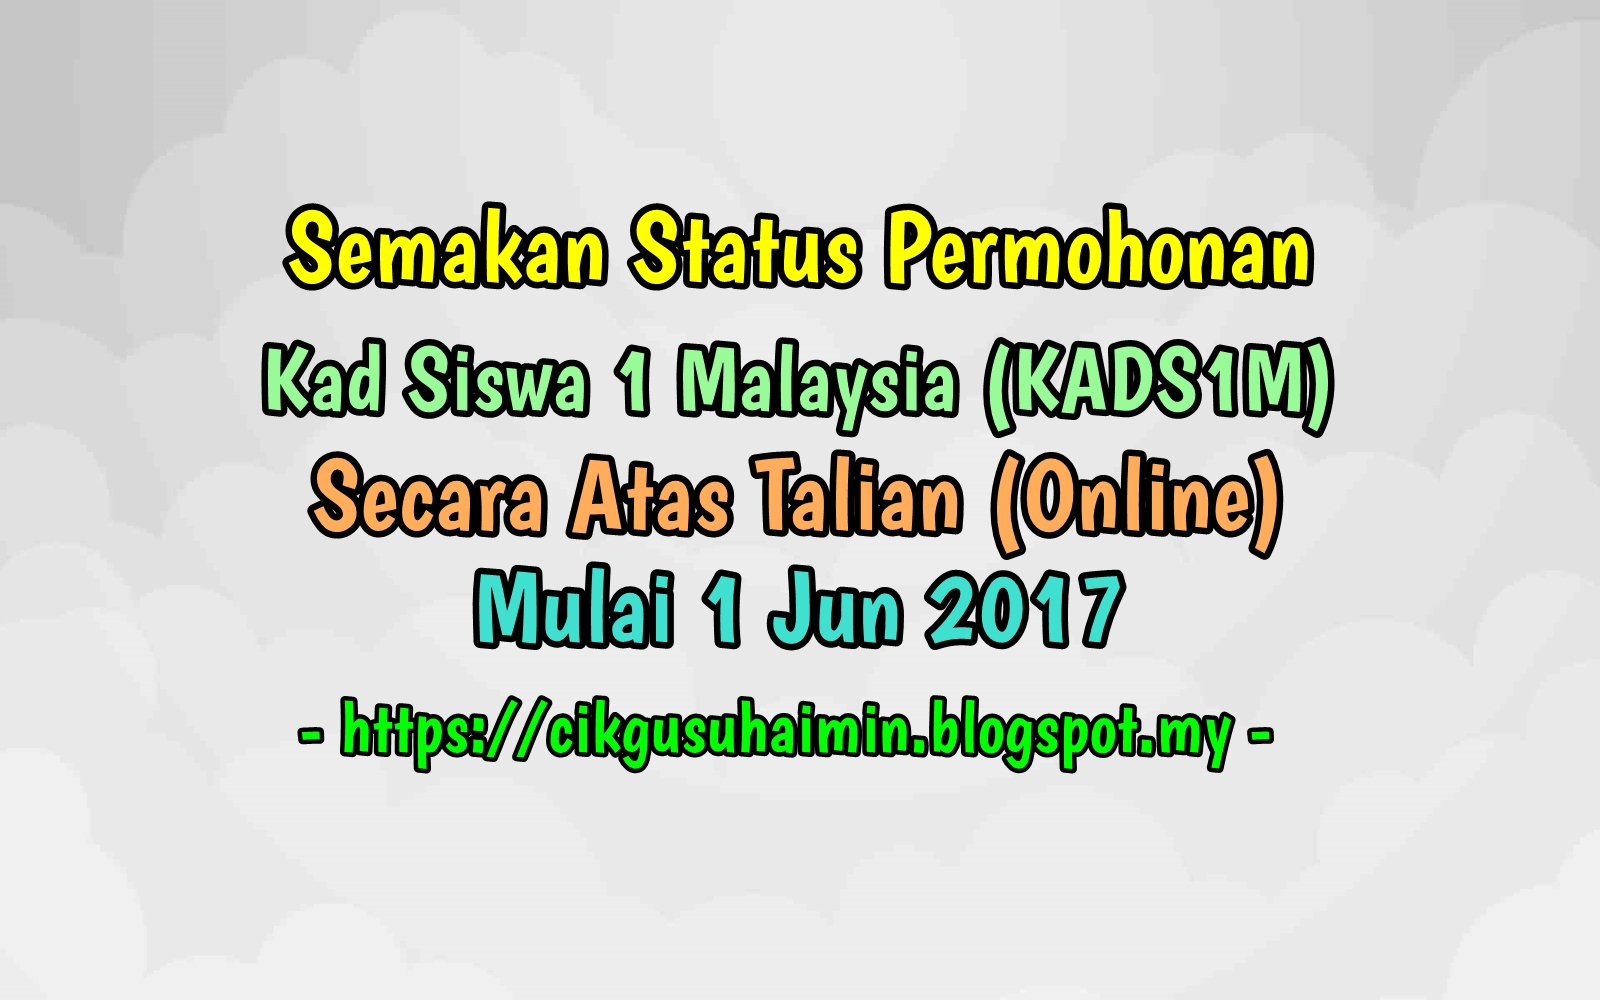 Semakan Status Permohonan Kad Siswa 1 Malaysia Kads1m Secara Atas Talian Online Mulai 1 Jun 2017